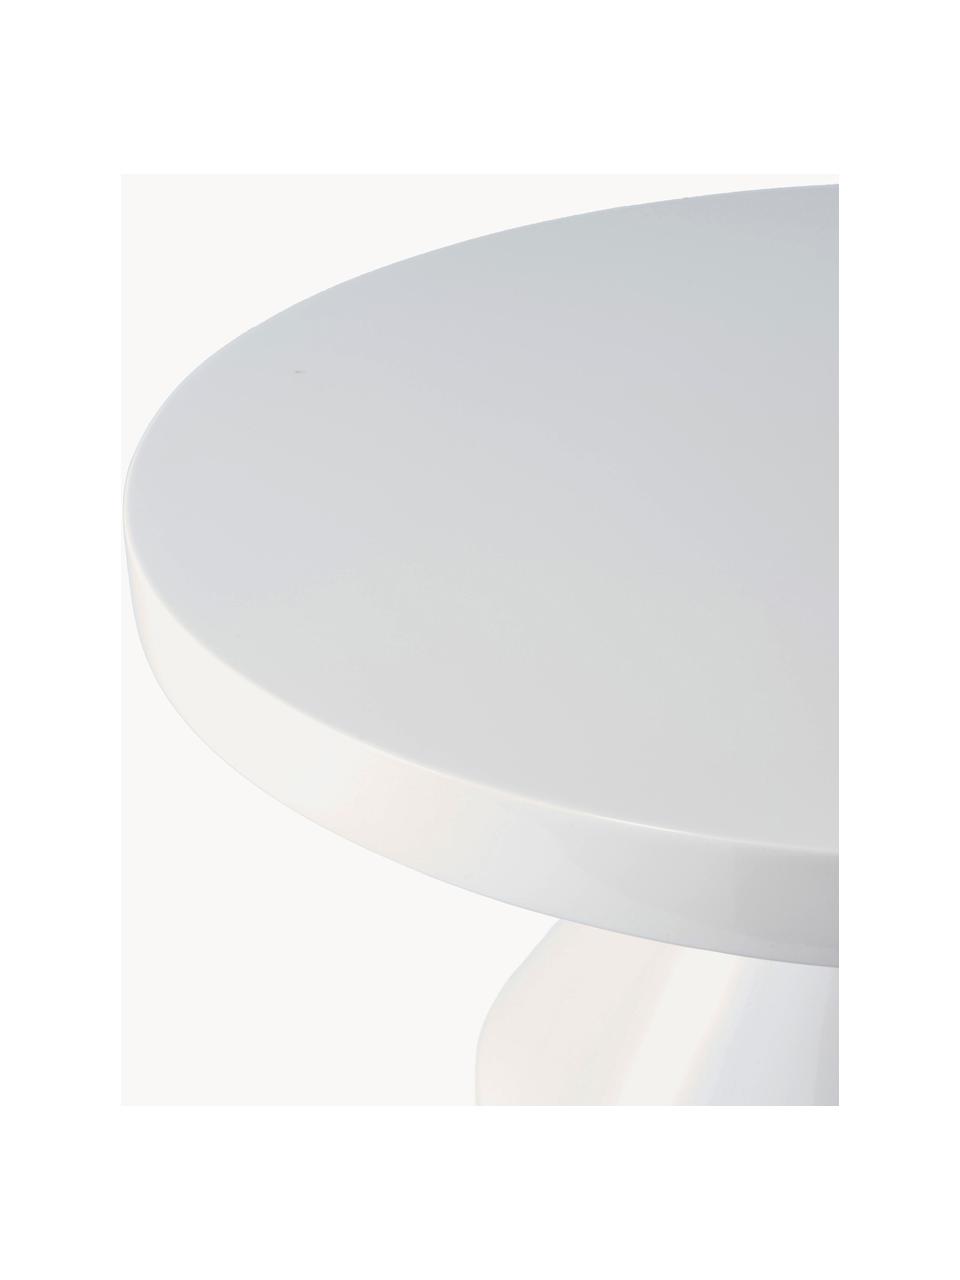 Stolik kawowy Zig Zag, Tworzywo sztuczne lakierowane, Biały, Ø 60 cm